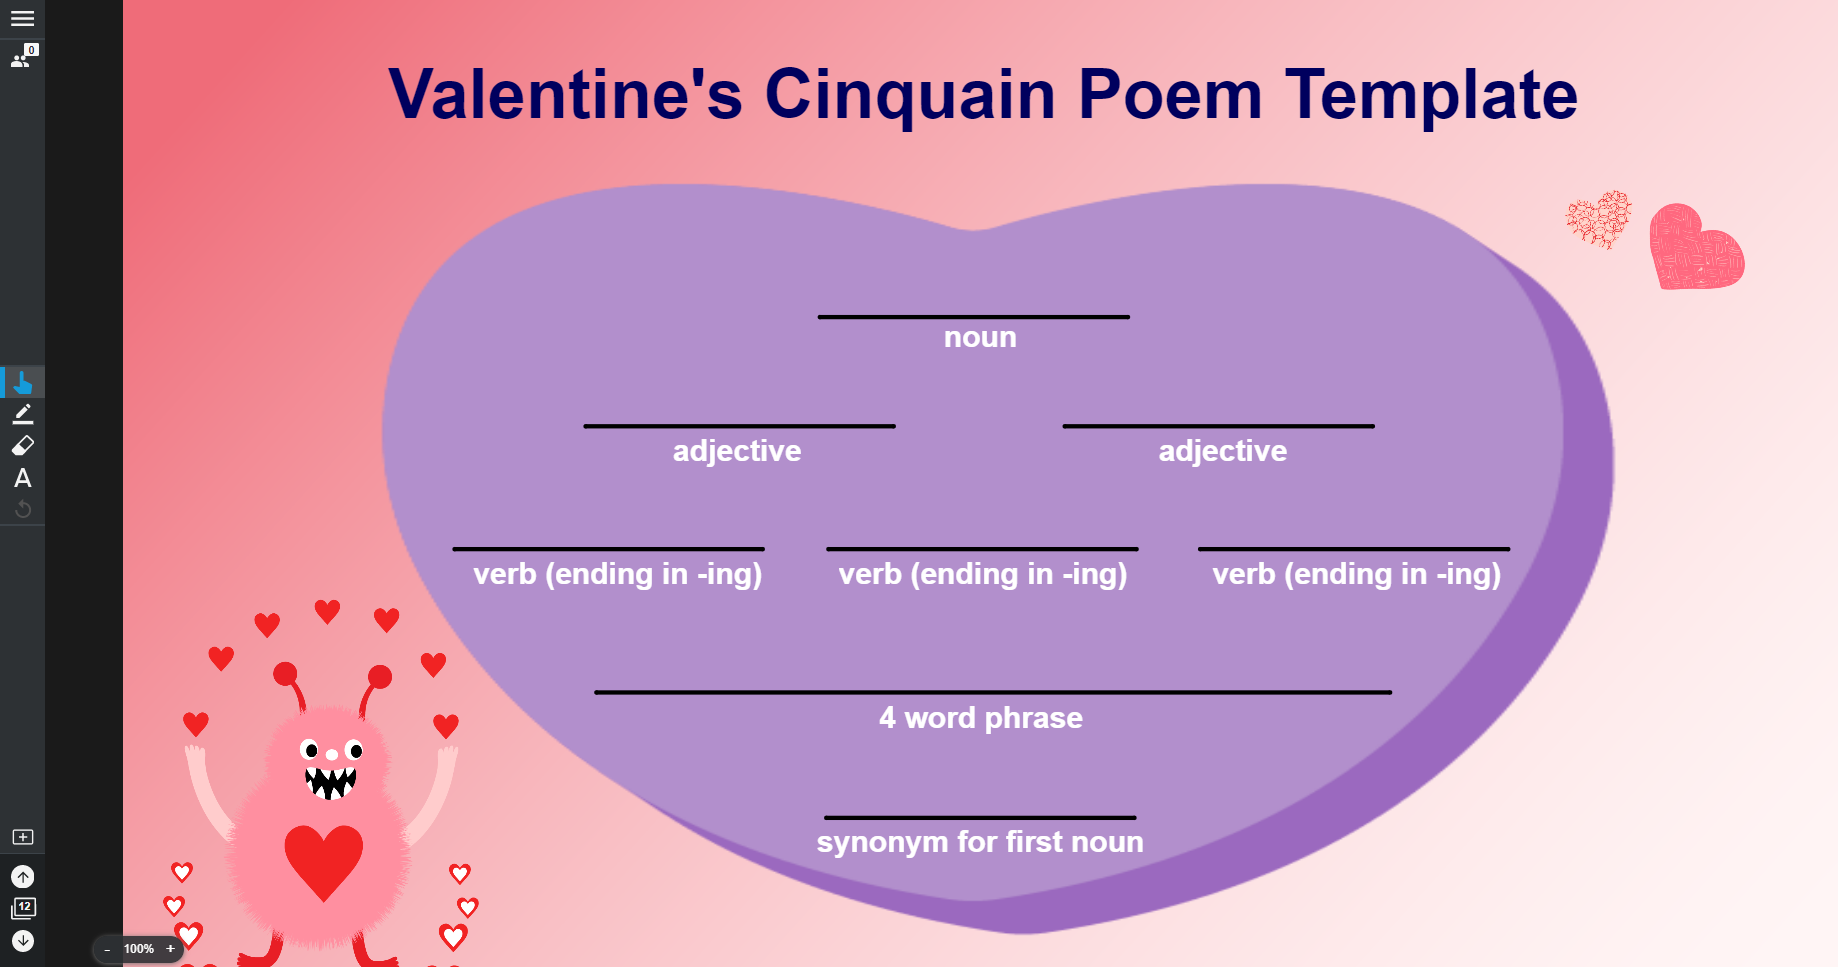 Valentines Cinquain Poem